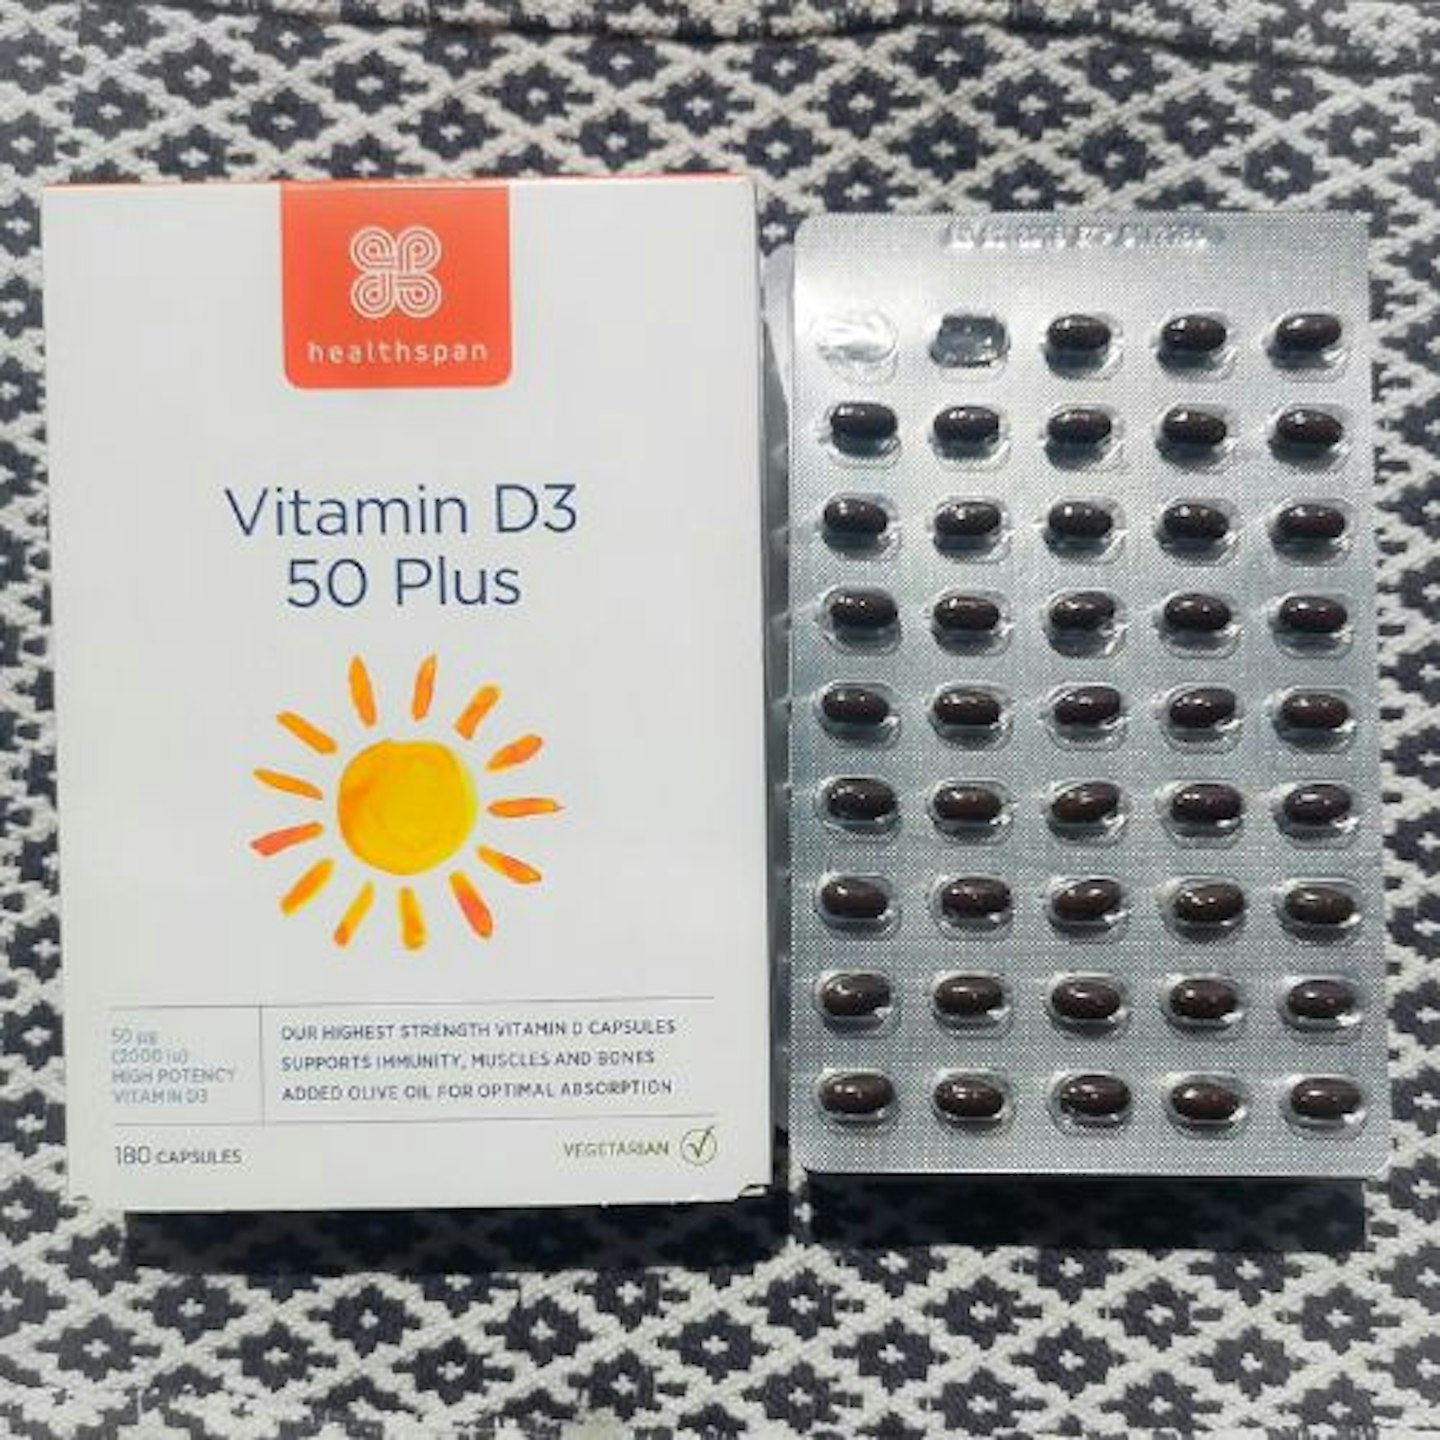 Healthspan Vitamin D 